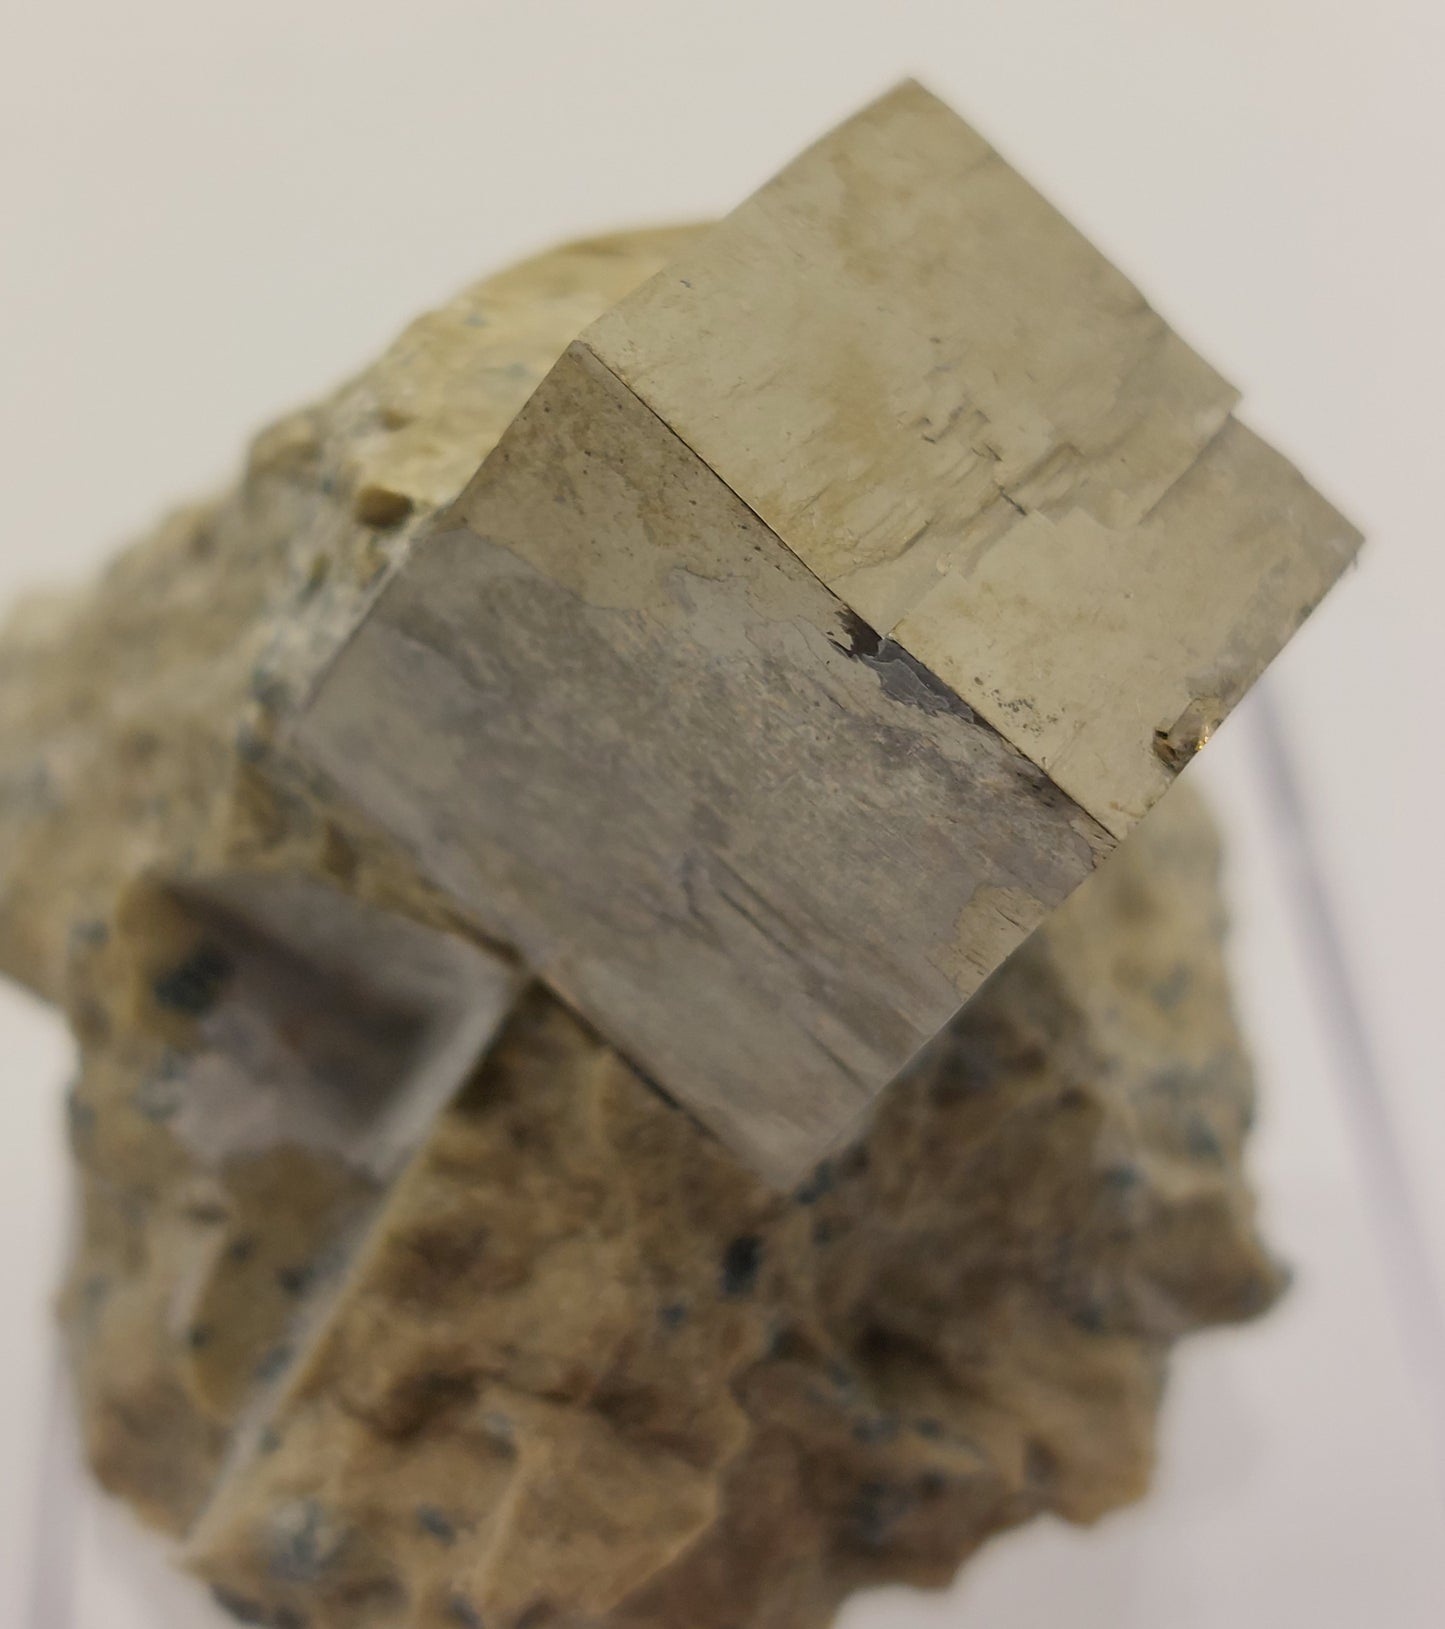 Pyrite in matrix